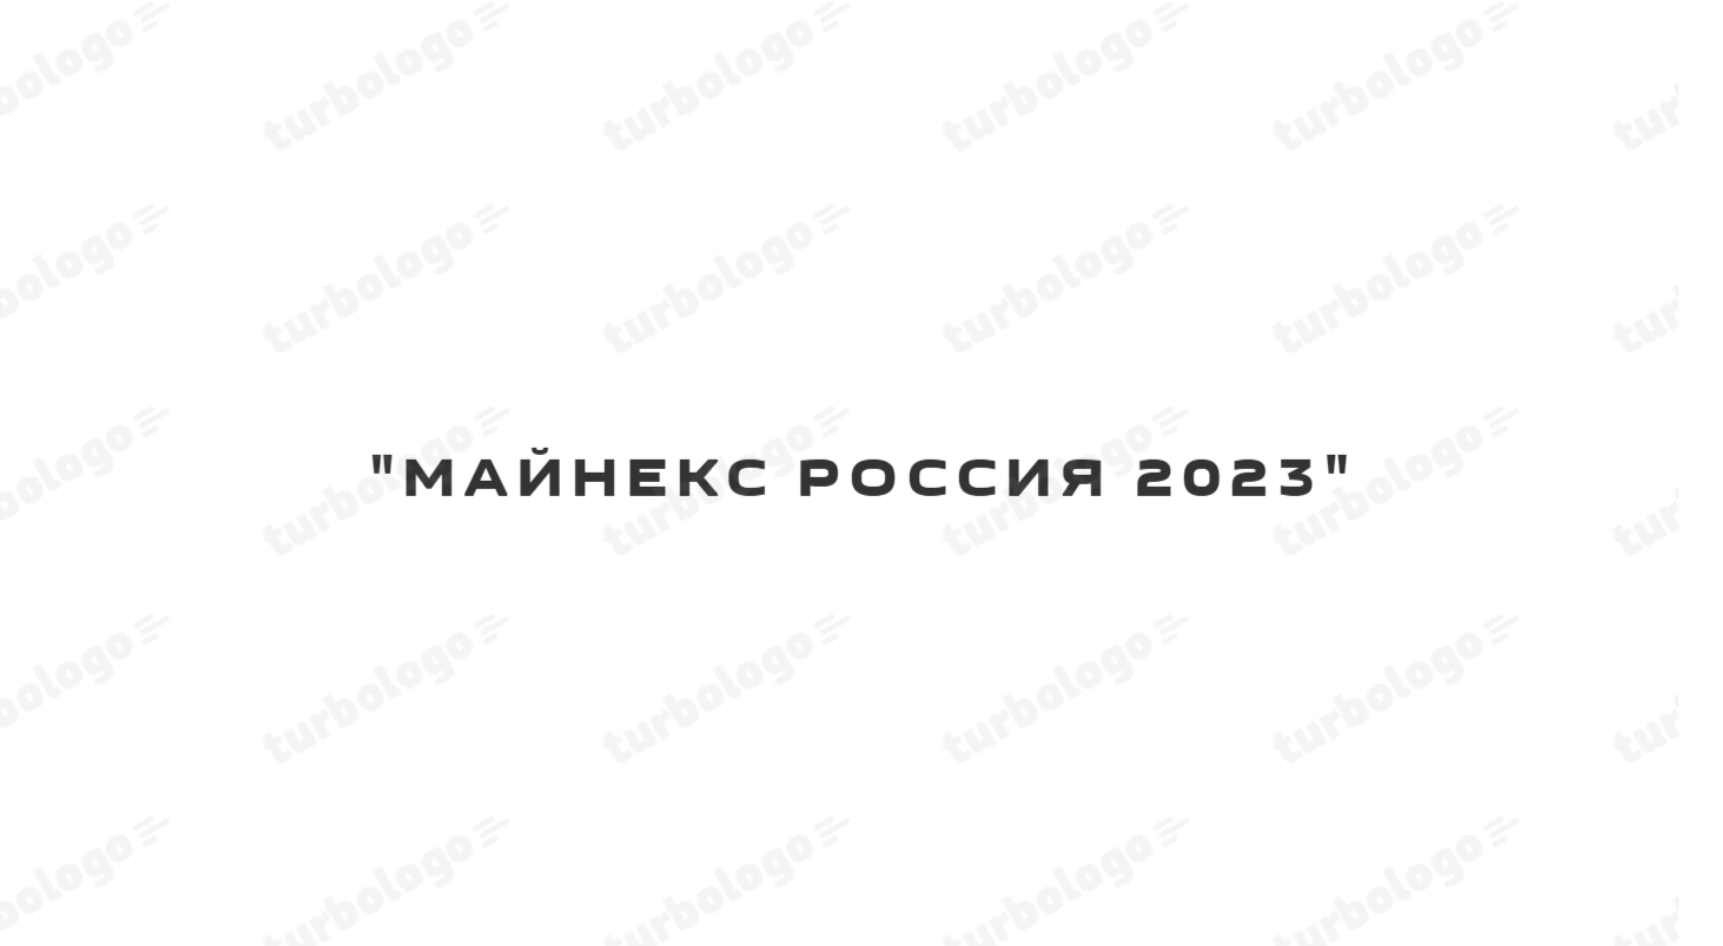 Логотип Майнекс 2023